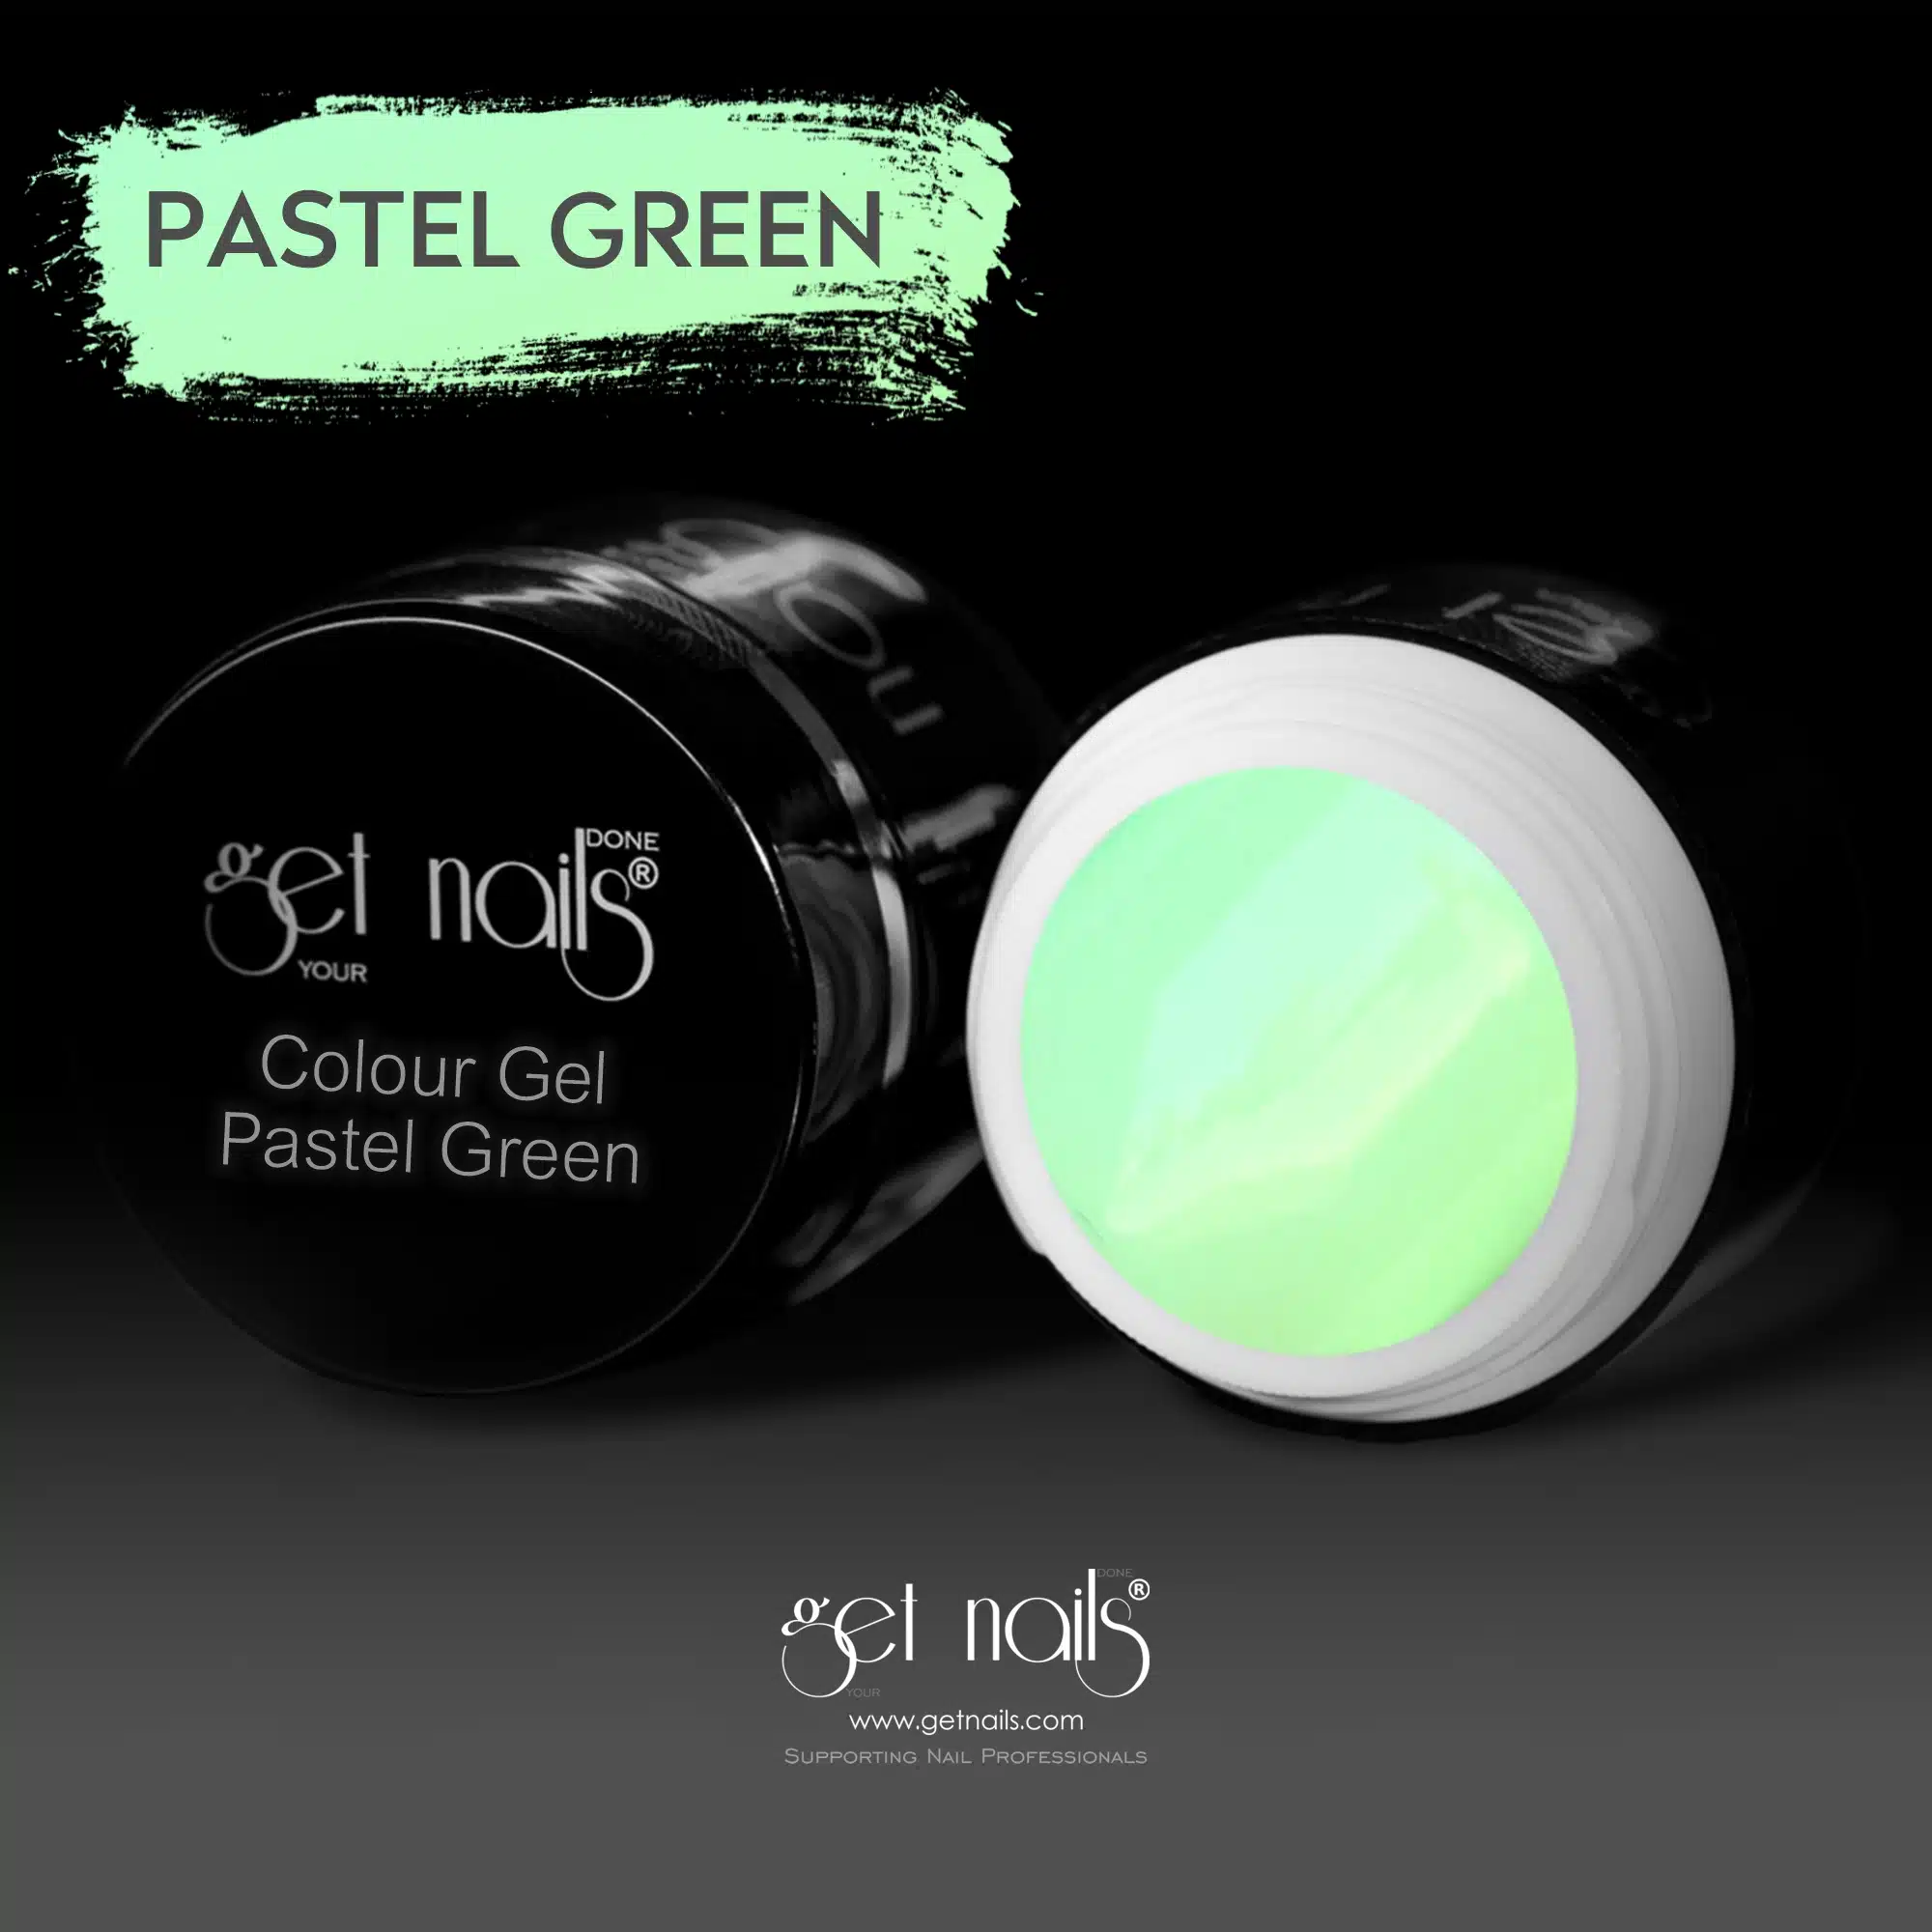 Get Nails Austria - Colour Gel Pastel Green 5g